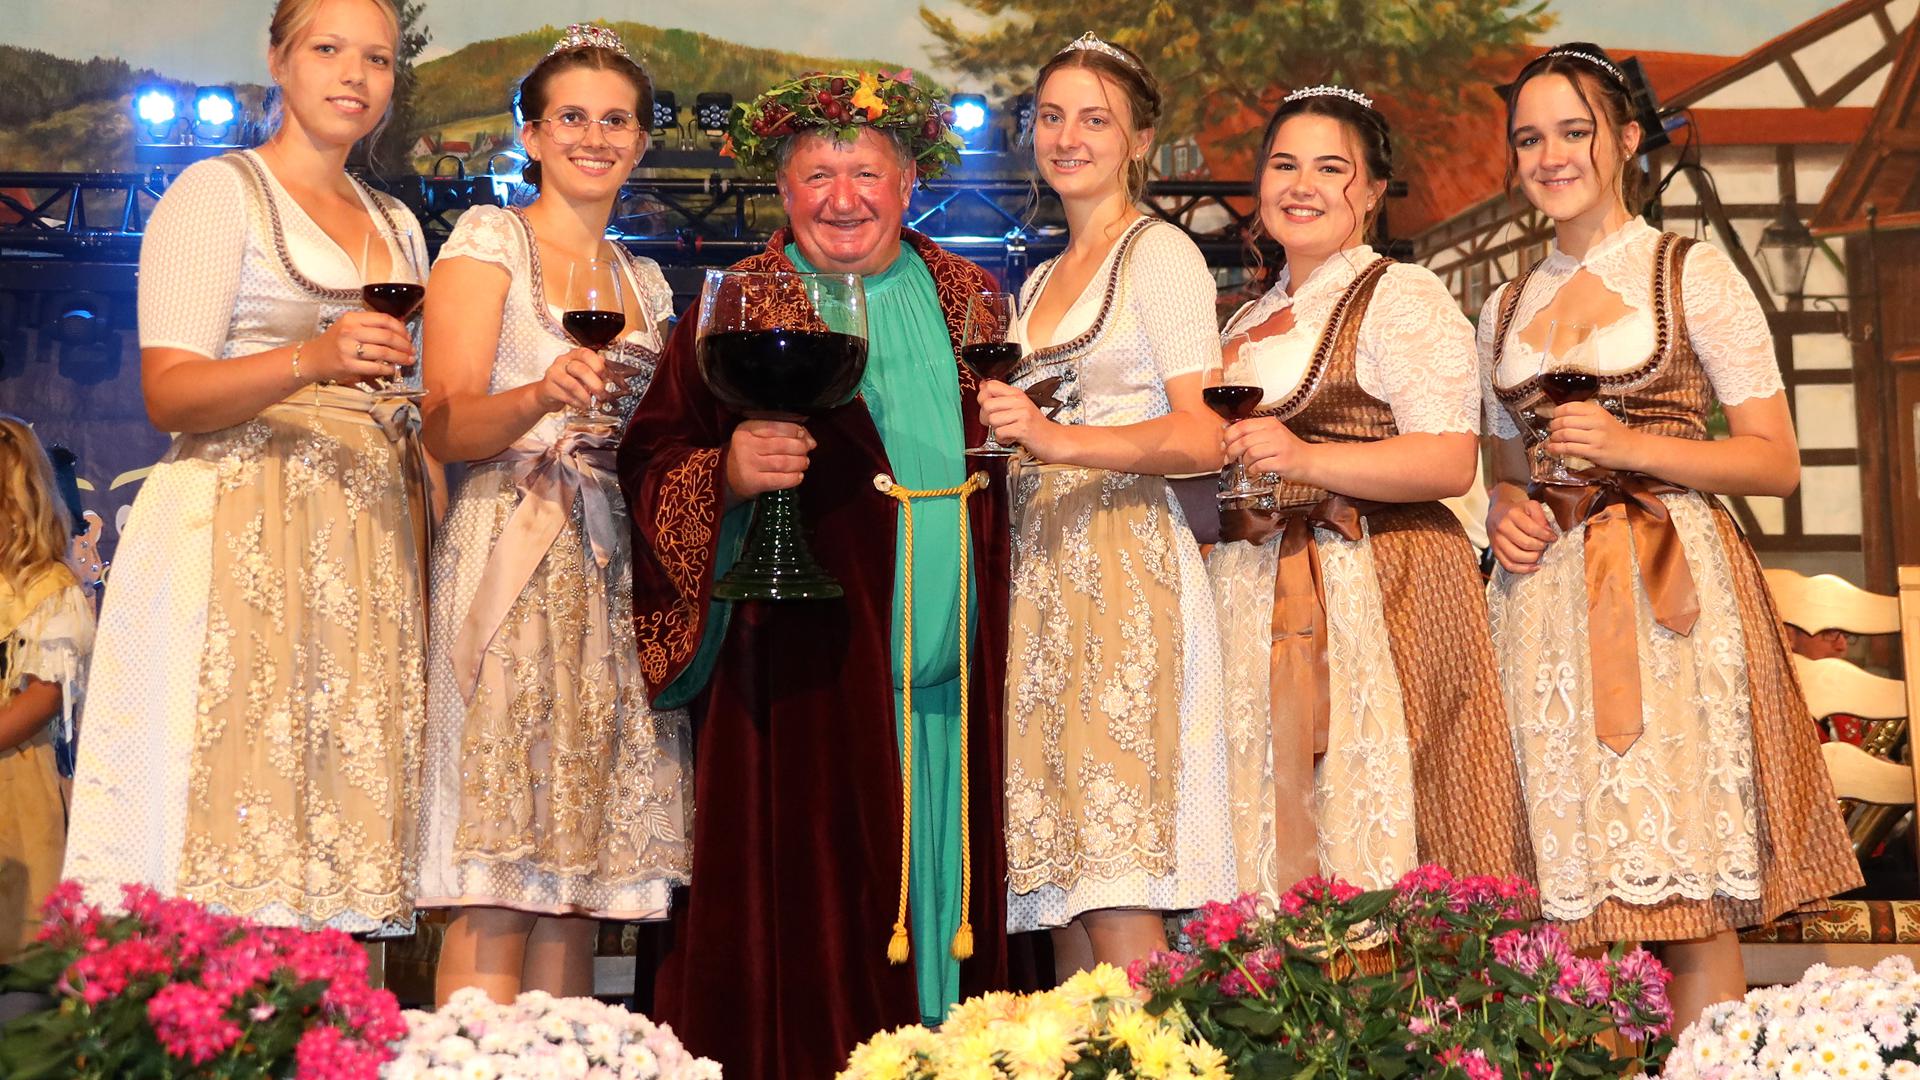 Krönung der neuen Weinhoheiten in Sasbachwalden - 2.000 Leute bei Trachtenparty zum Auftakt des Erntedank- und Weinfestes